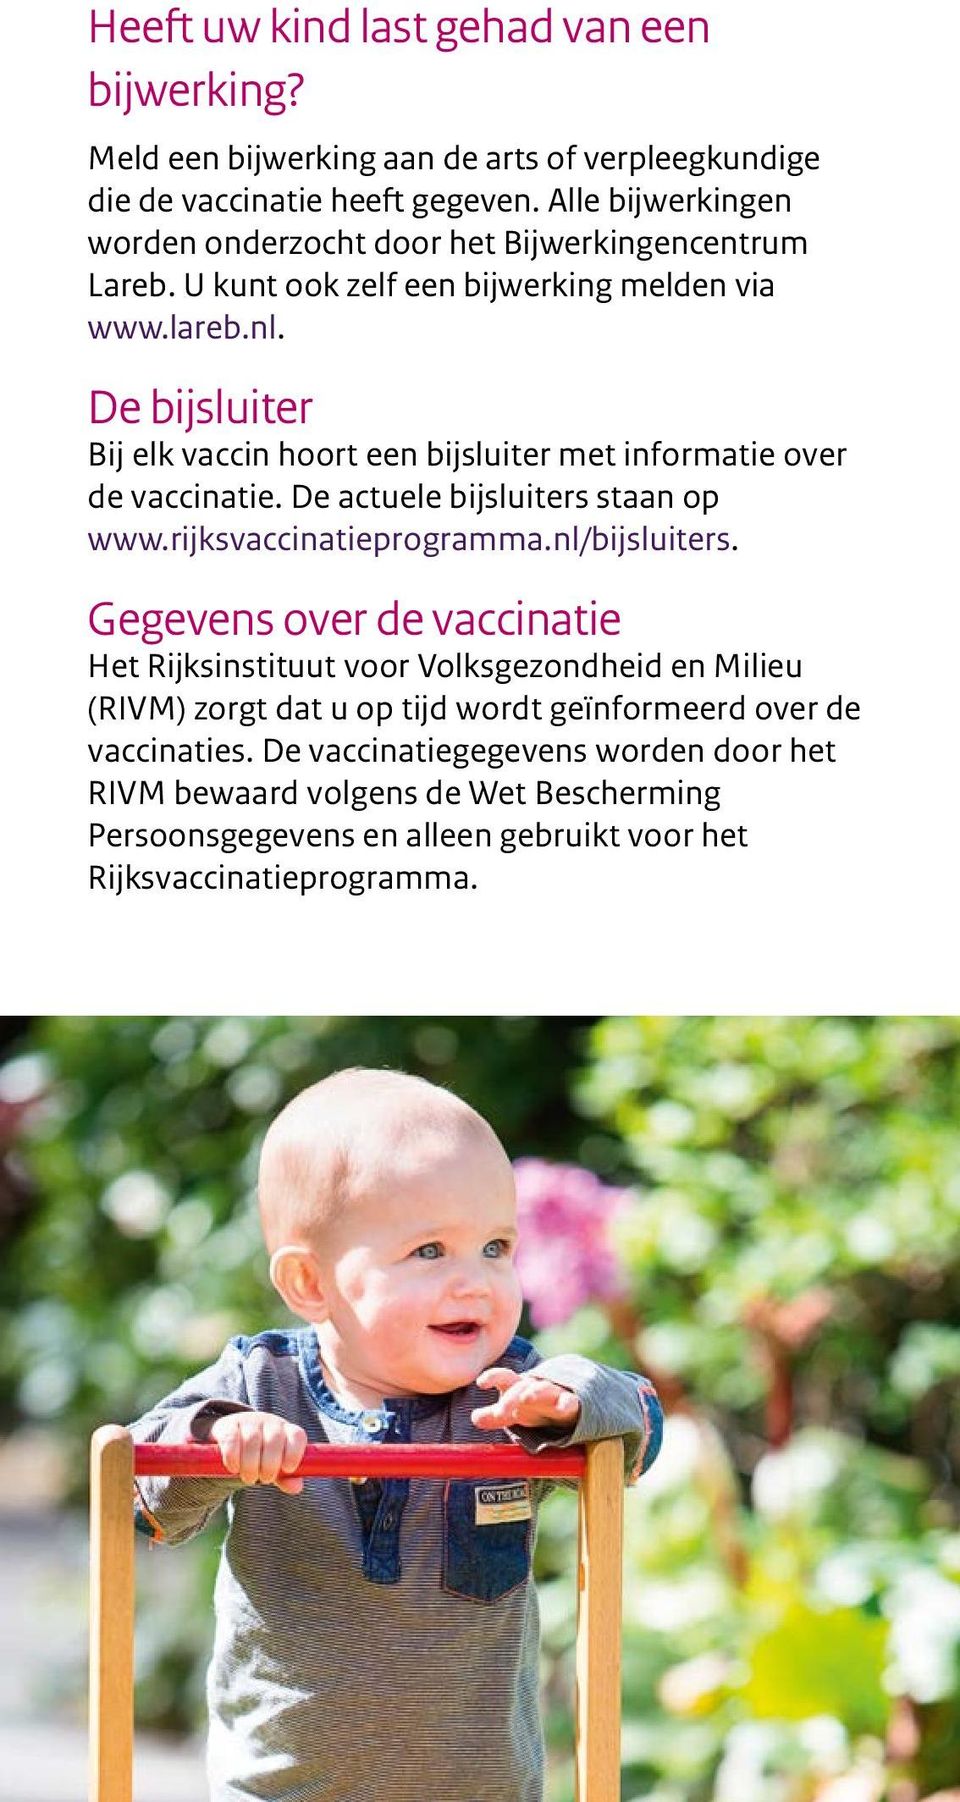 De bijsluiter Bij elk vaccin hoort een bijsluiter met informatie over de vaccinatie. De actuele bijsluiters staan op www.rijksvaccinatieprogramma.nl/bijsluiters.